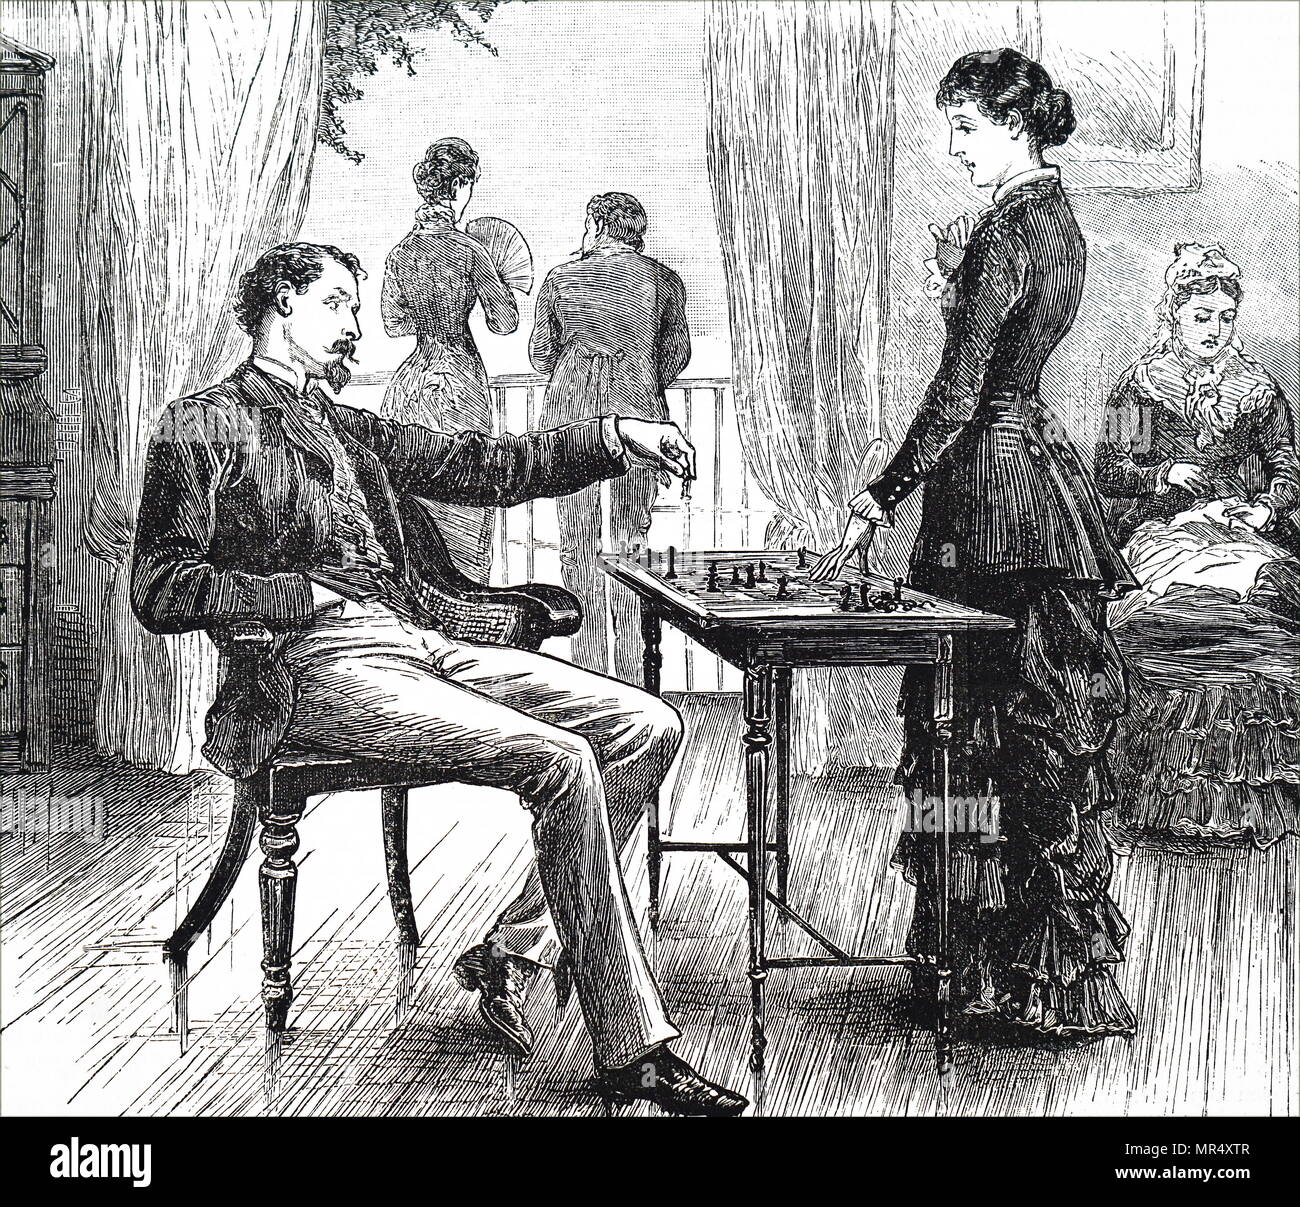 Ilustración mostrando un agradable juego de ajedrez. Fecha del siglo XIX Foto de stock